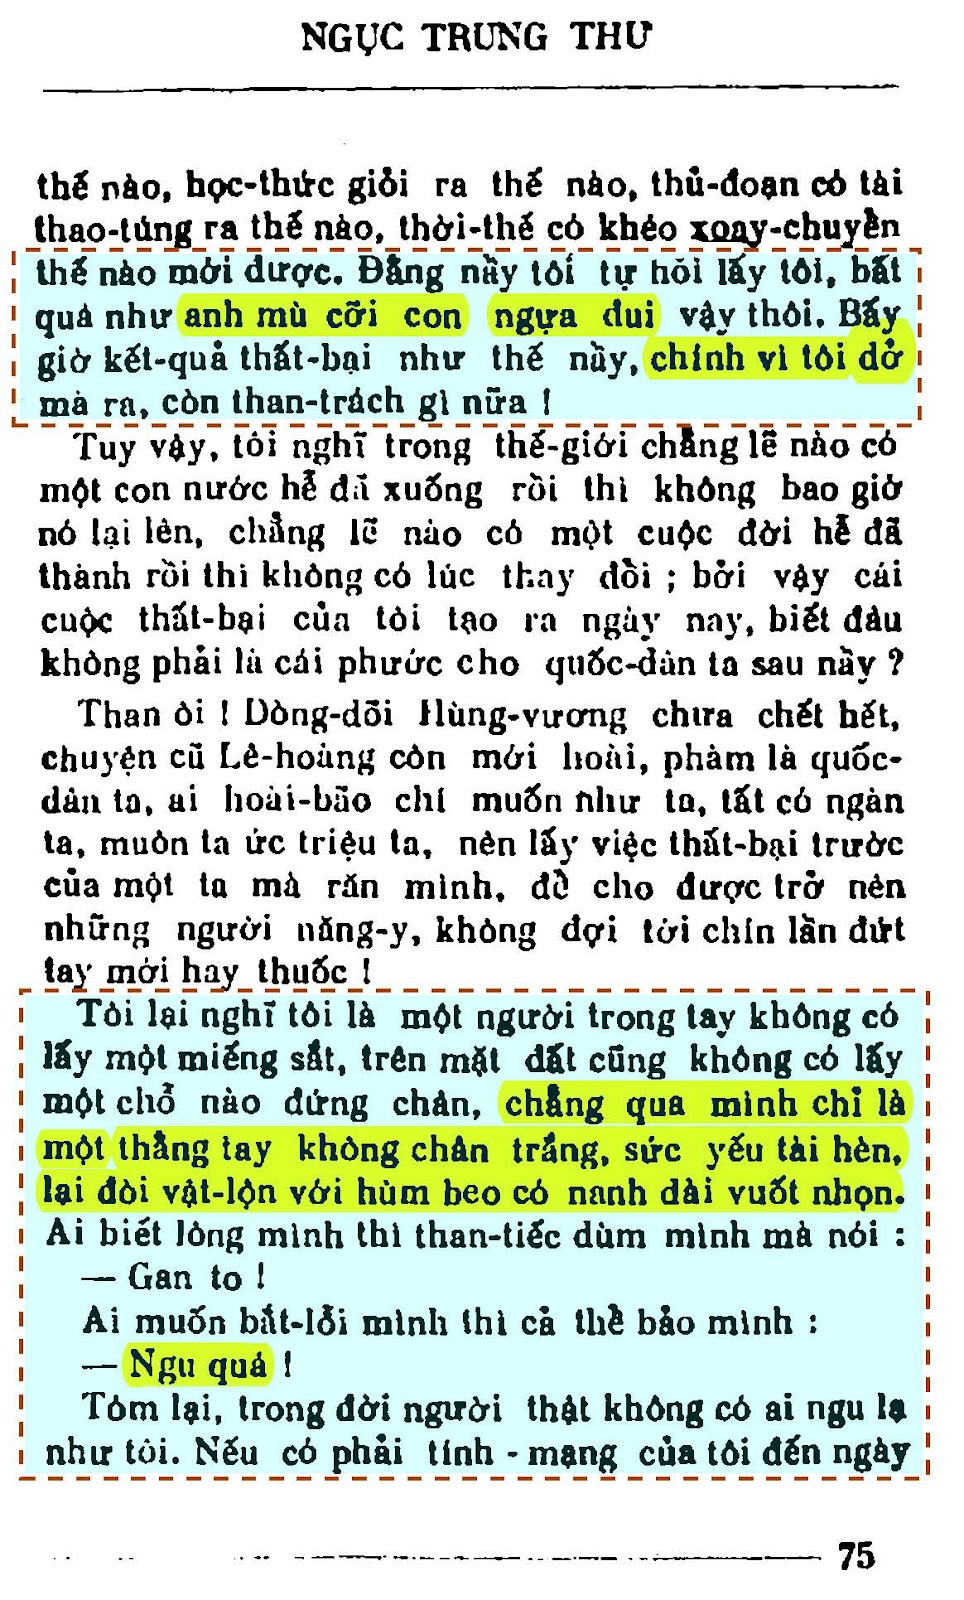 Trang 75 Ngục trung thư - Tân Việt.jpg